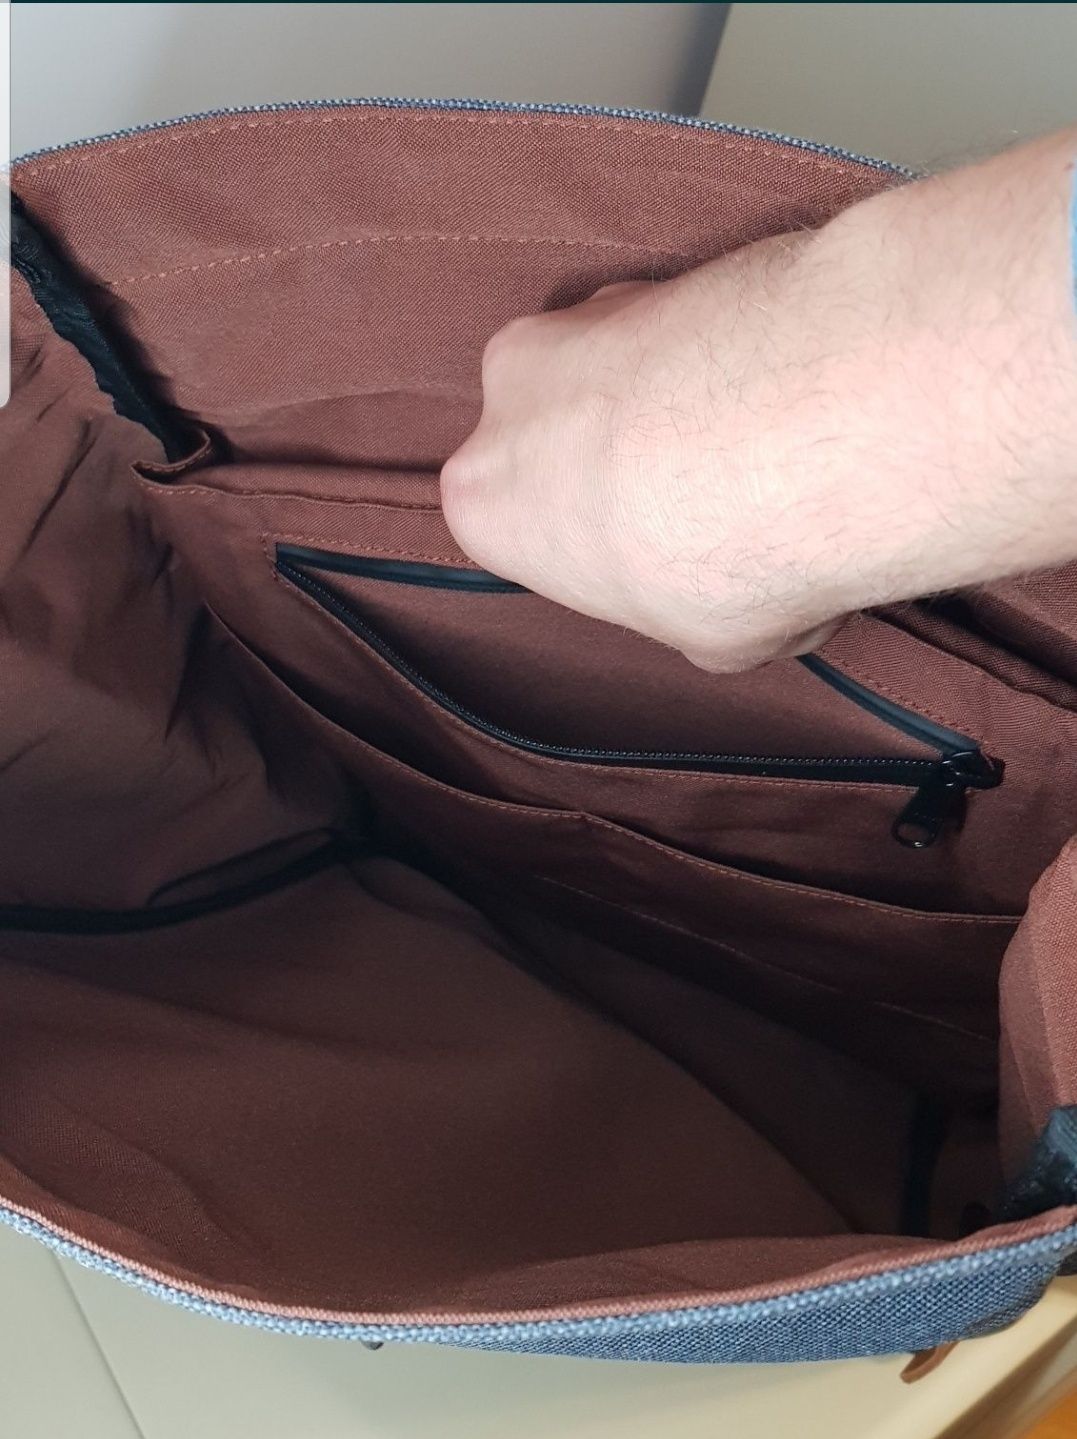 Рюкзак Kraxe Wien ранец сумка портфель НОВЫЙ с бирками Германия